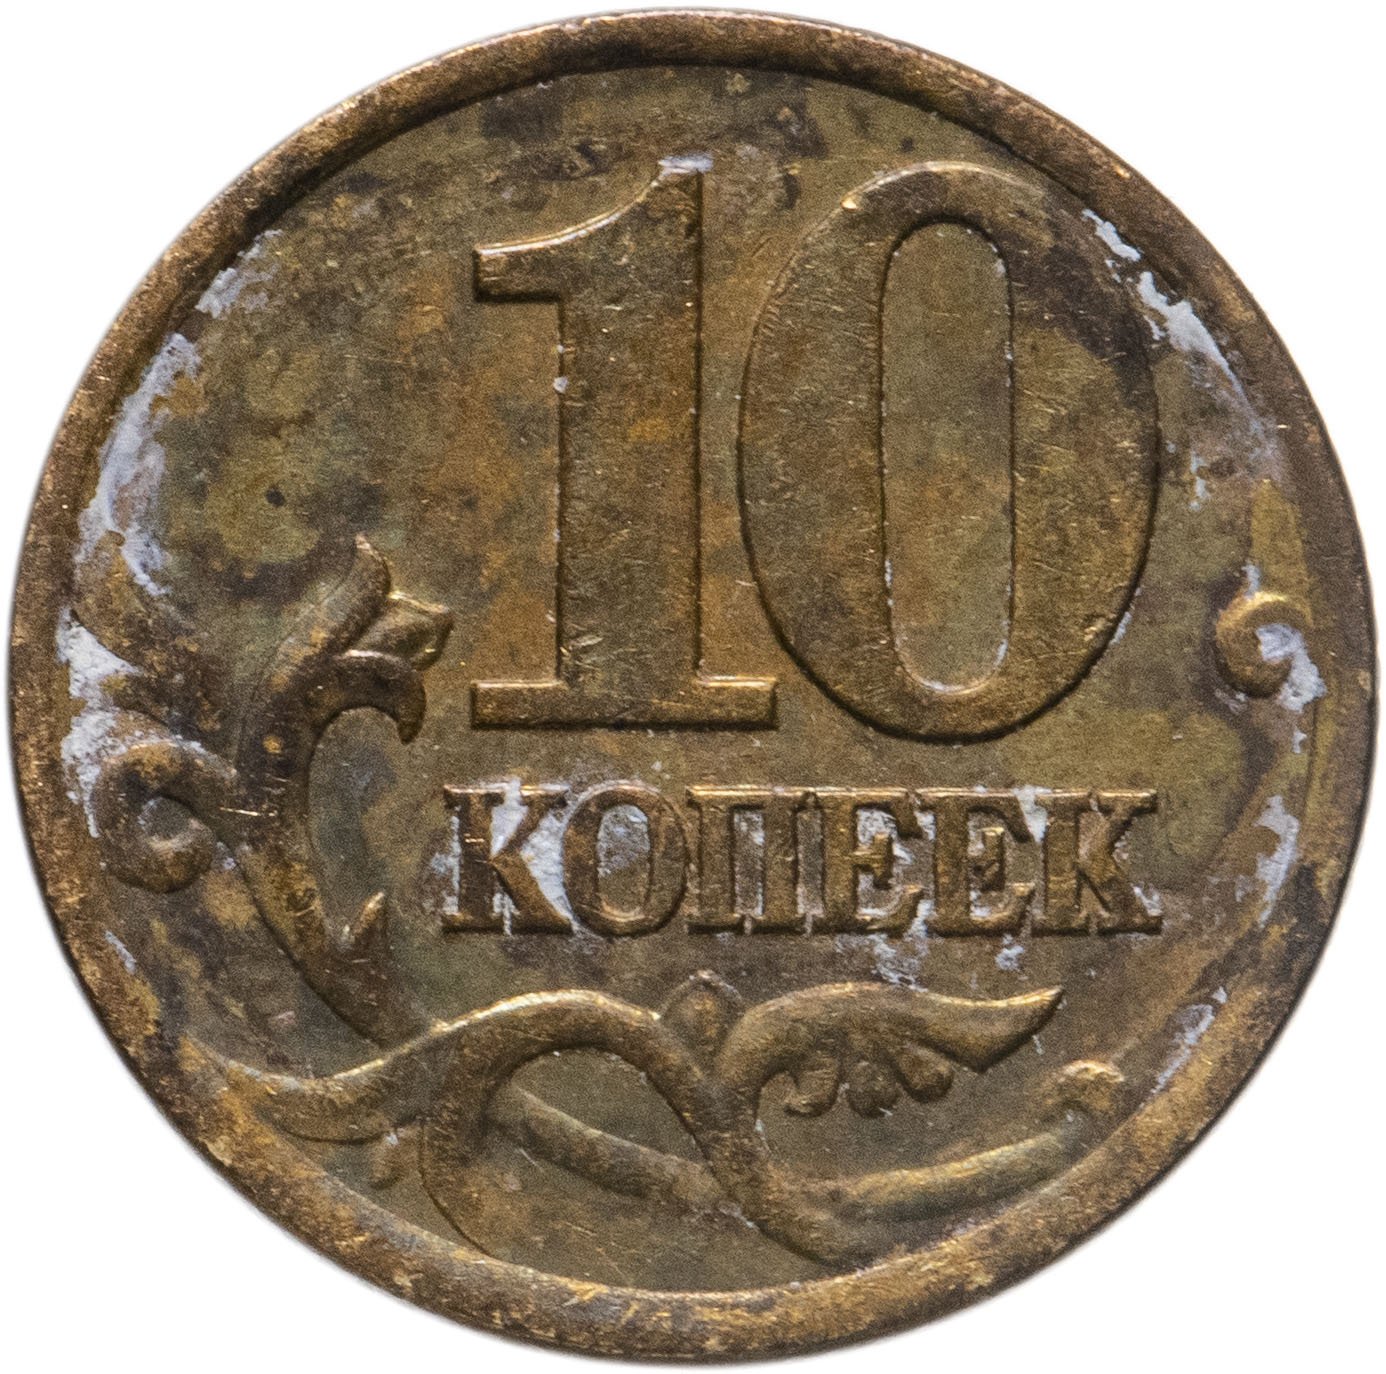 10 копеек. Монета 10 копеек 2001 СП. Дорогие монеты копейка 10 2001. Монета 10 копеек 2001 года. Российская монета 10 копеек.